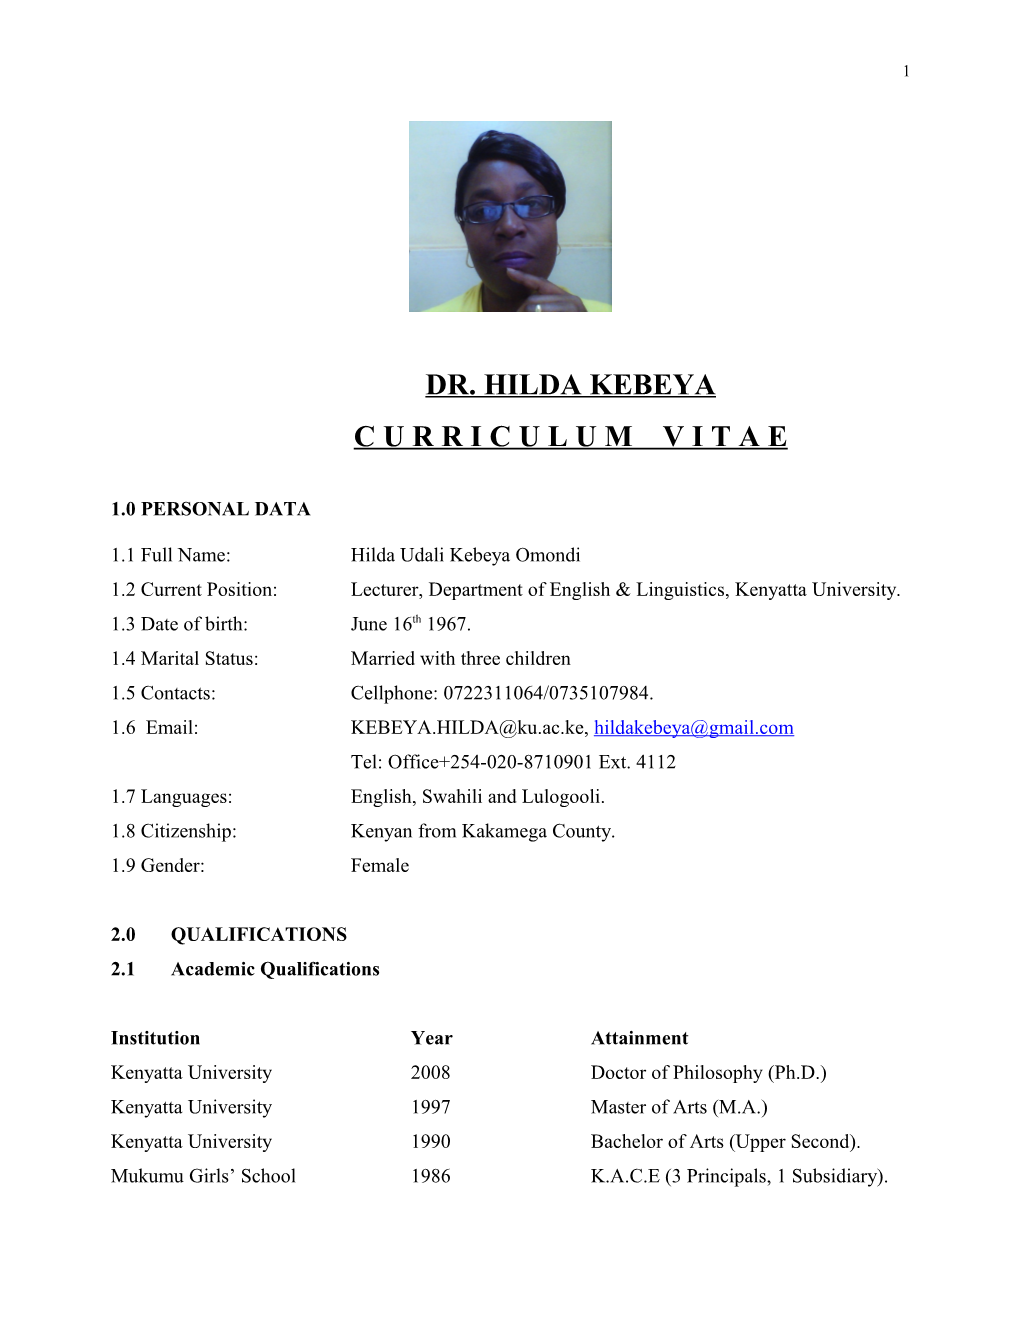 Dr. Hilda Kebeya